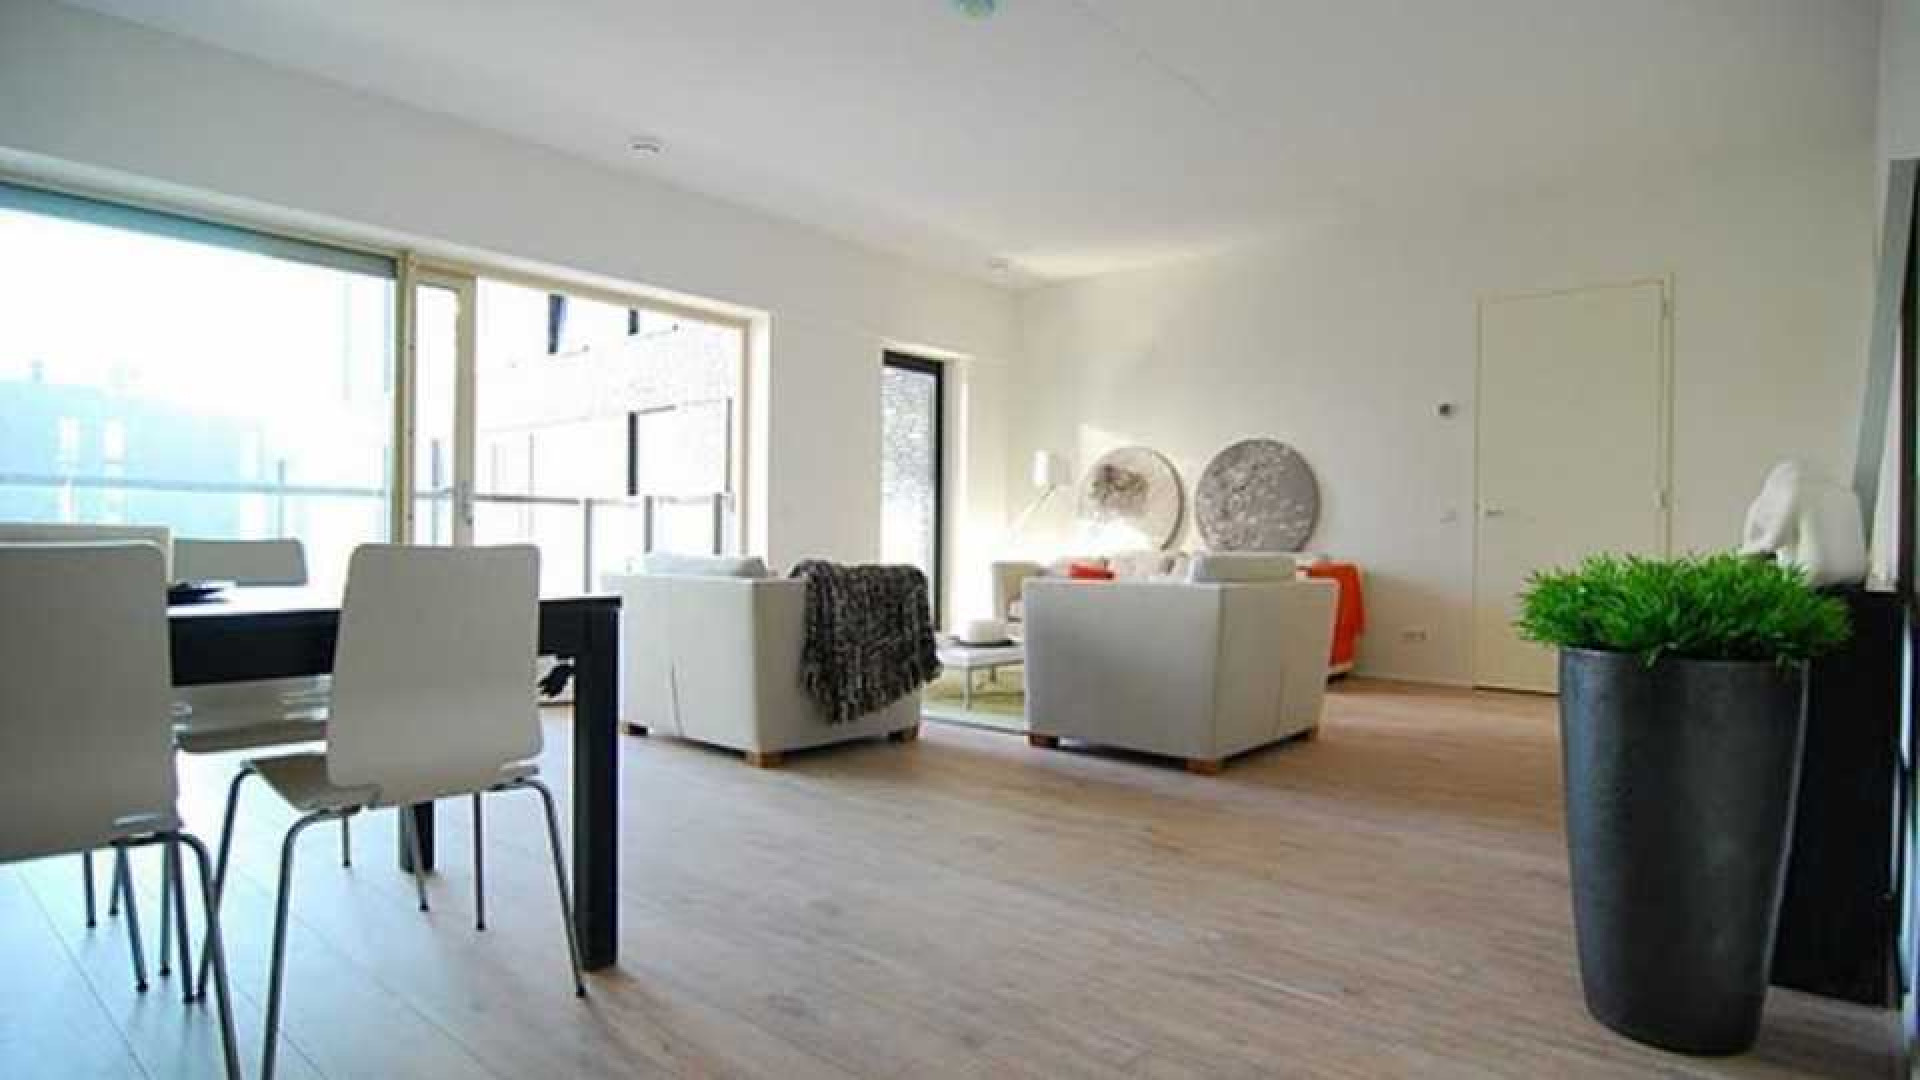 Ajax voetballer Joel Veltman huurt zeer luxe appartement aan de Zuid As in Amsterdam. Zie foto's 4